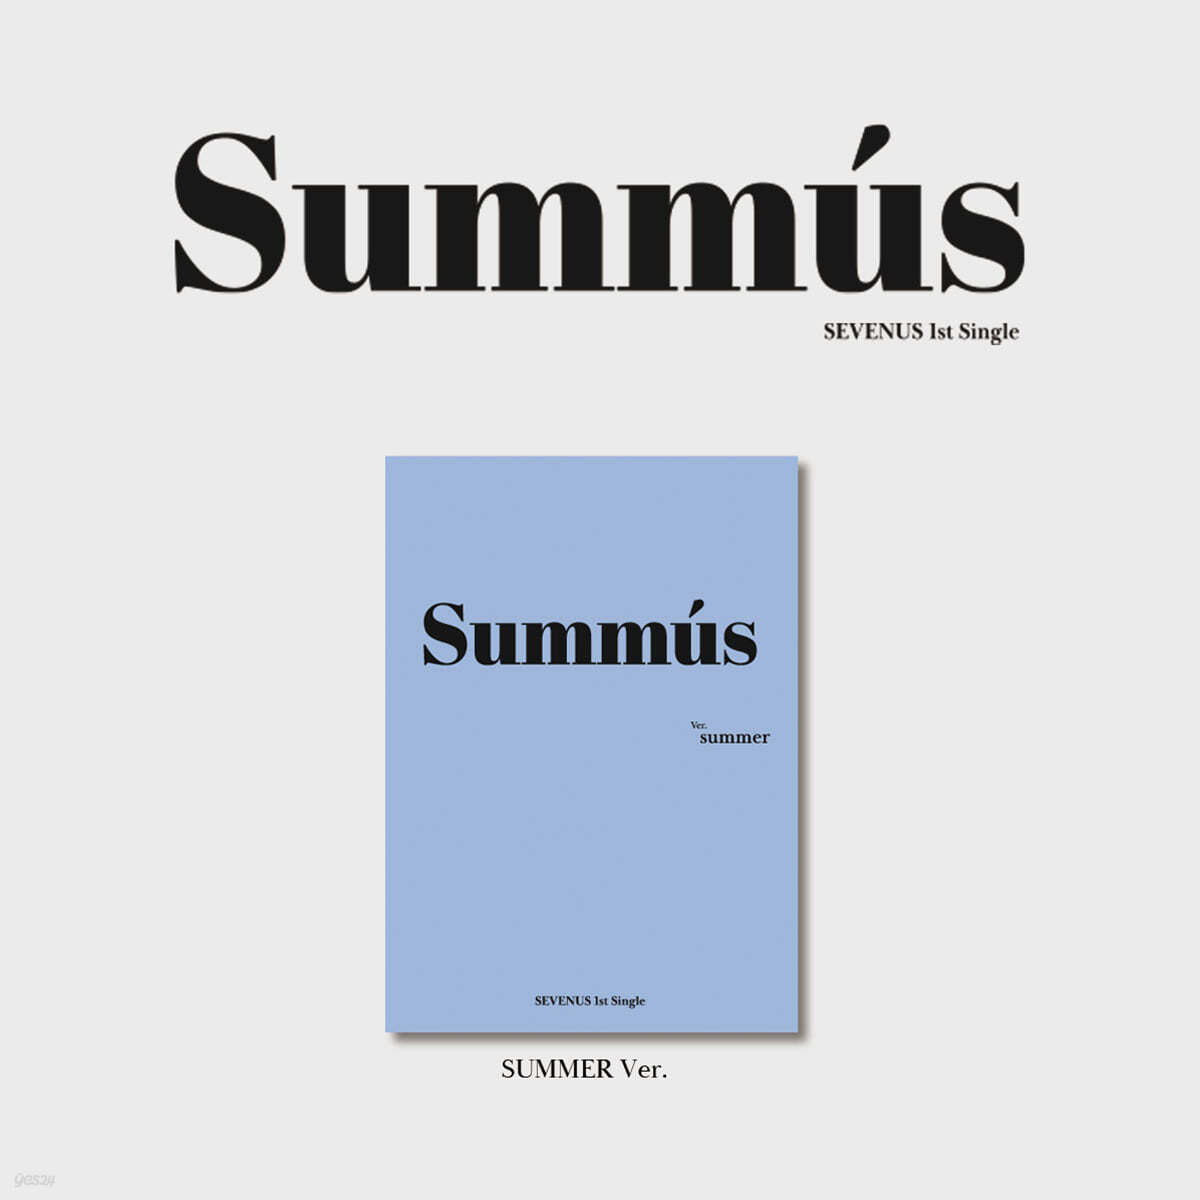 세븐어스 (SEVENUS) - 1st Single : SUMMUS [Summer Ver.]